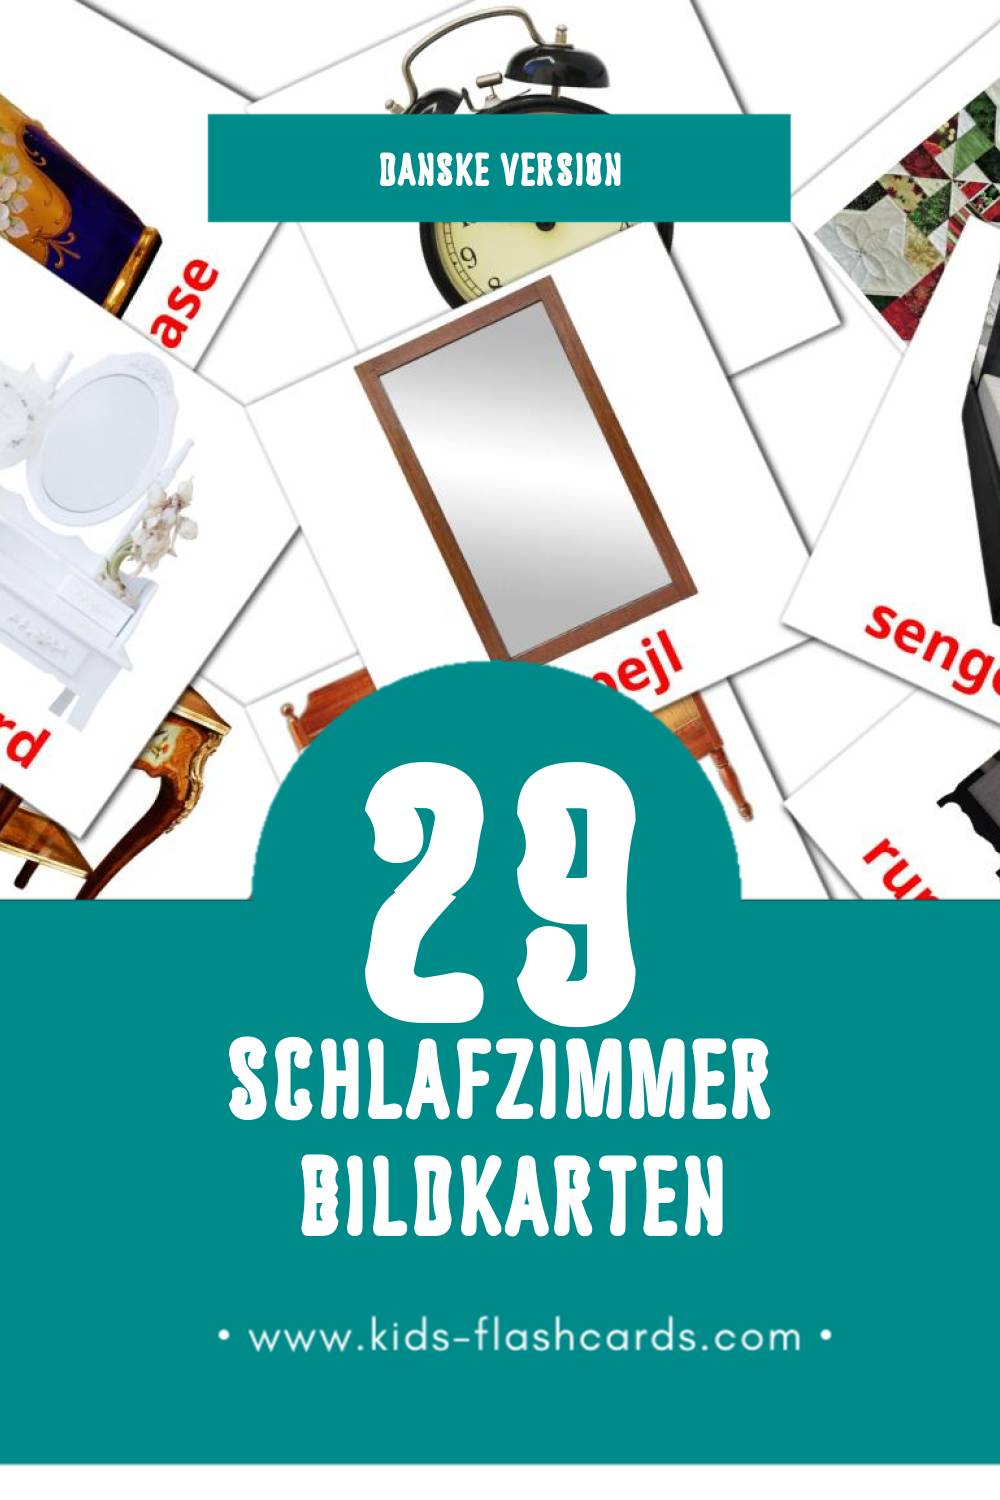 Visual Soveværelse Flashcards für Kleinkinder (29 Karten in Dansk)